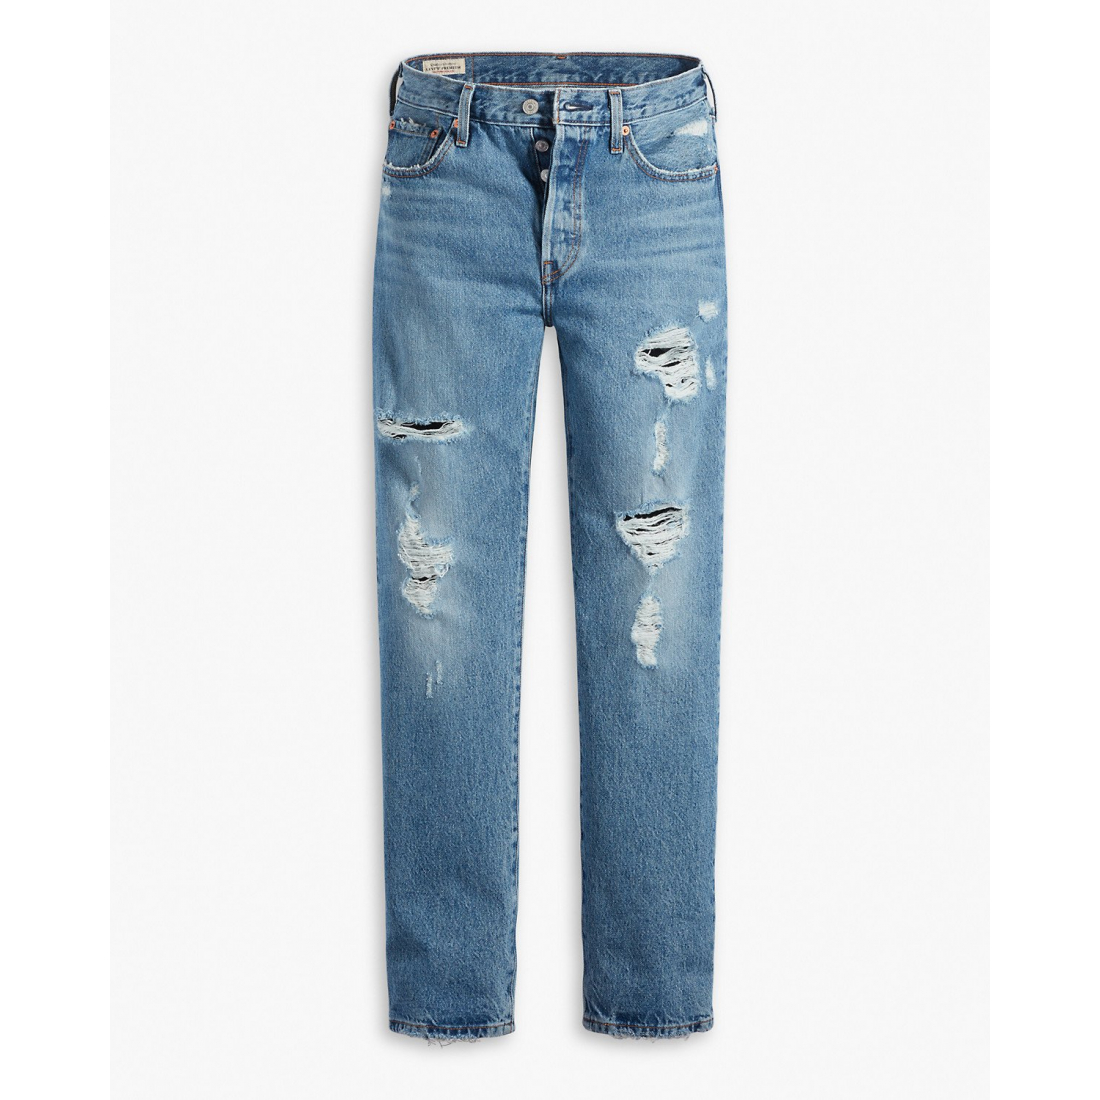 Women's '501 Original Fit' Jeans